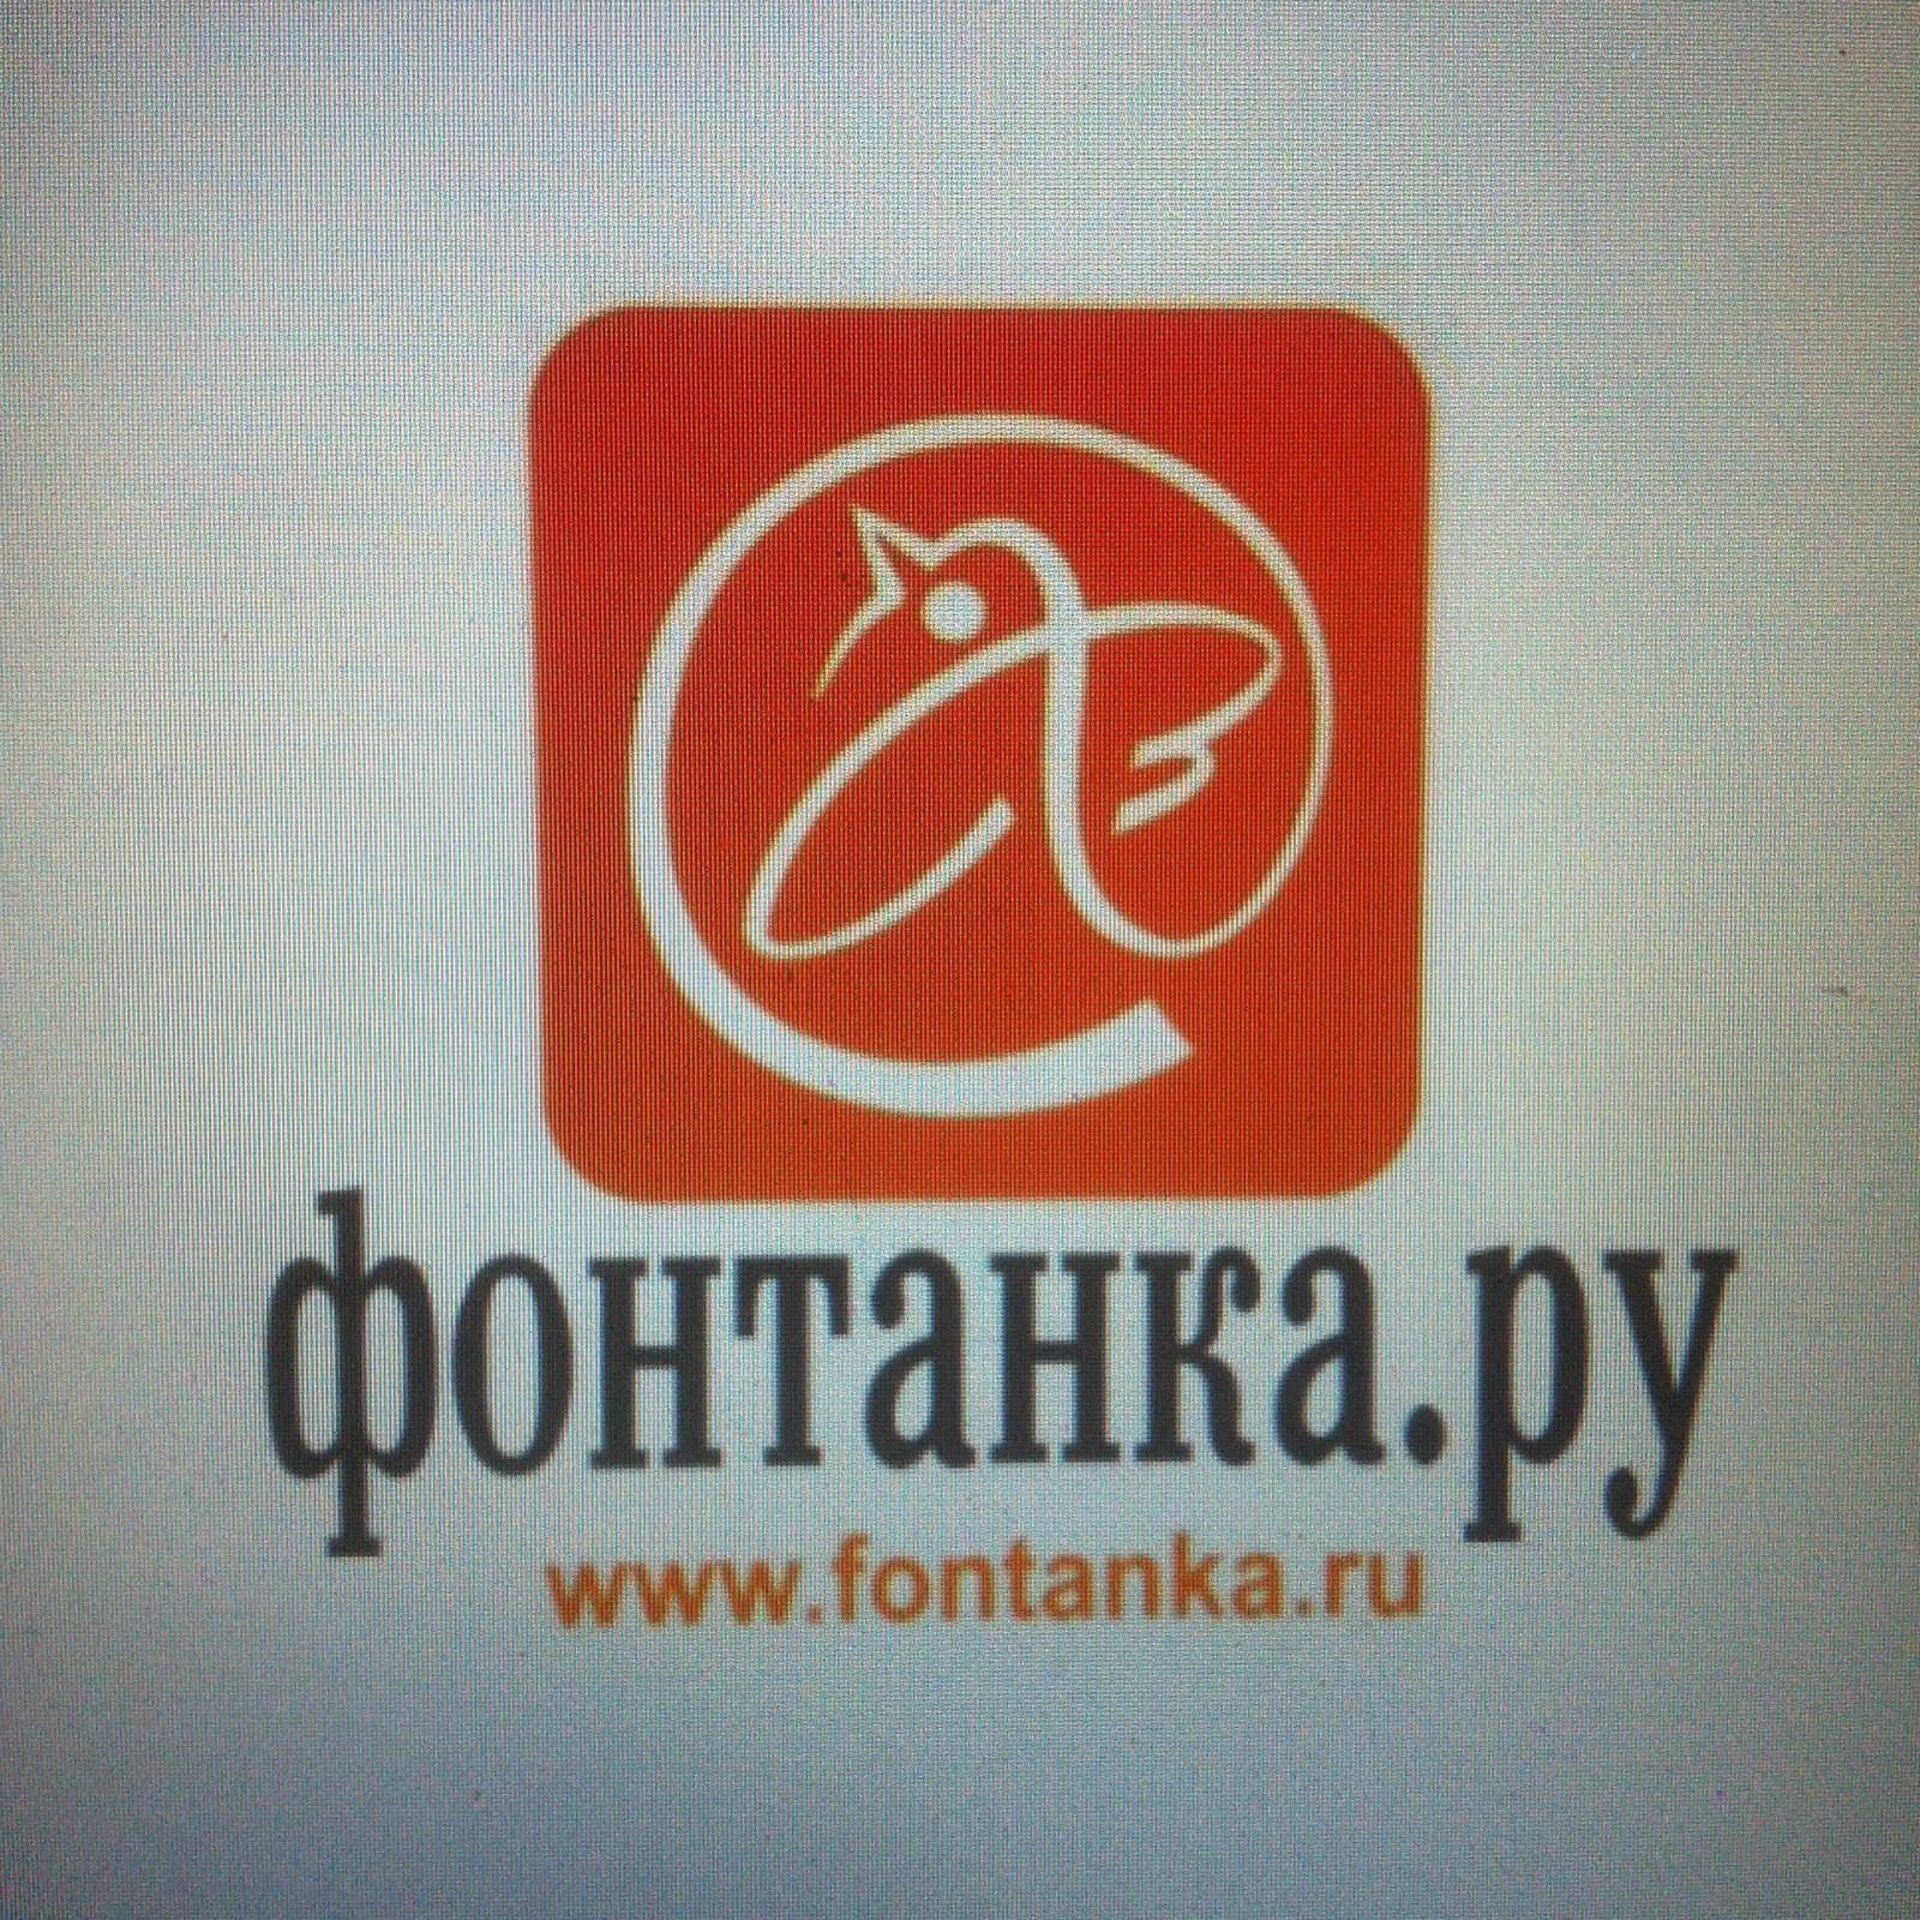 fontanka.ru spb